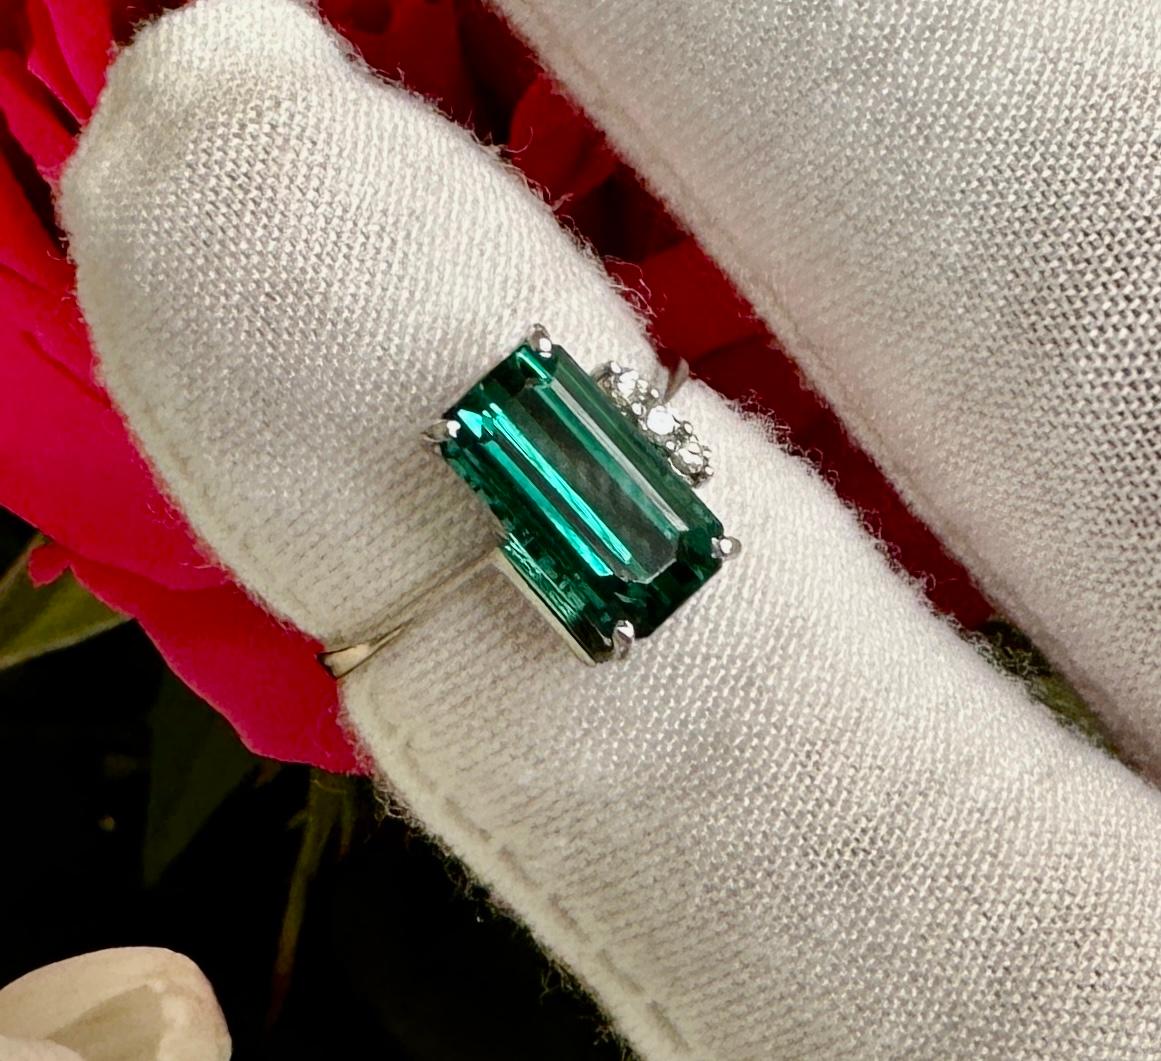 Emerald Cut Green Tourmaline Diamond Ring 18 Karat White Gold Engagement Cocktail Ring